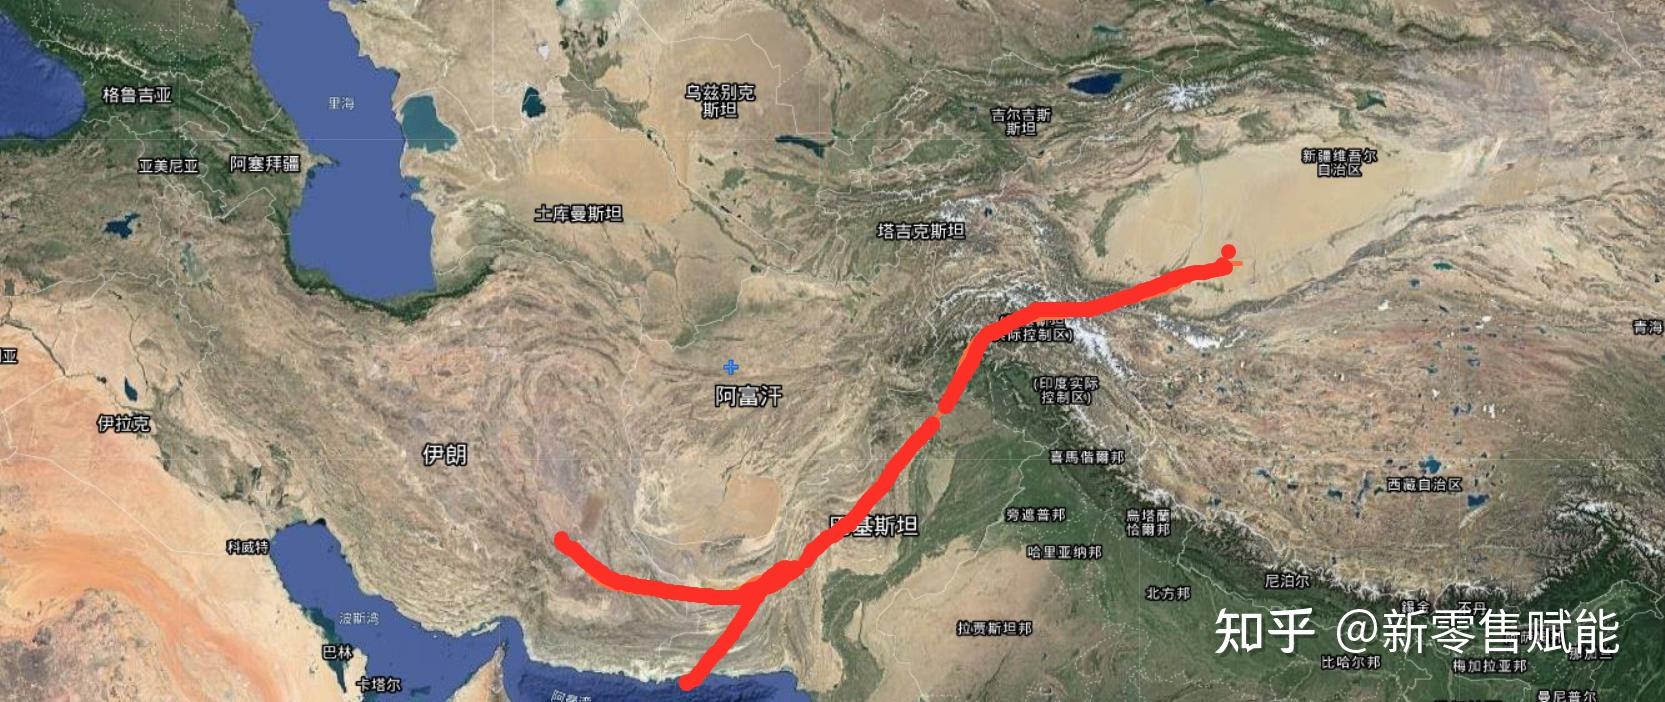 想从伊朗修条石油管道到中国途径巴基斯坦到新疆接入瓜达尔港口